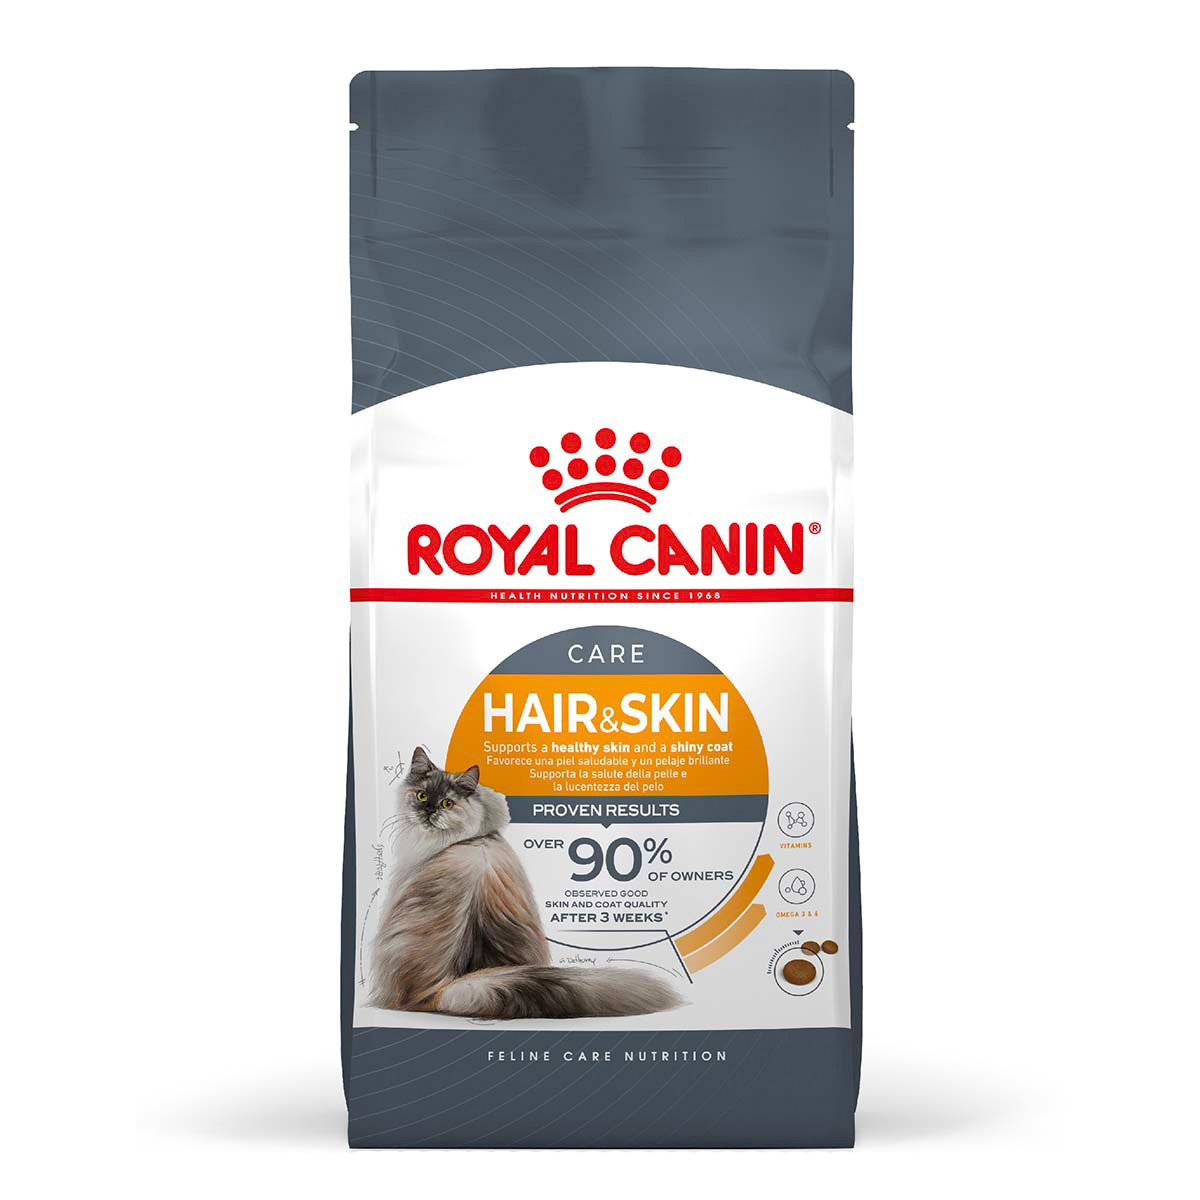 Royal Canin FCN Hair & Skin Care 2 kg von Royal Canin